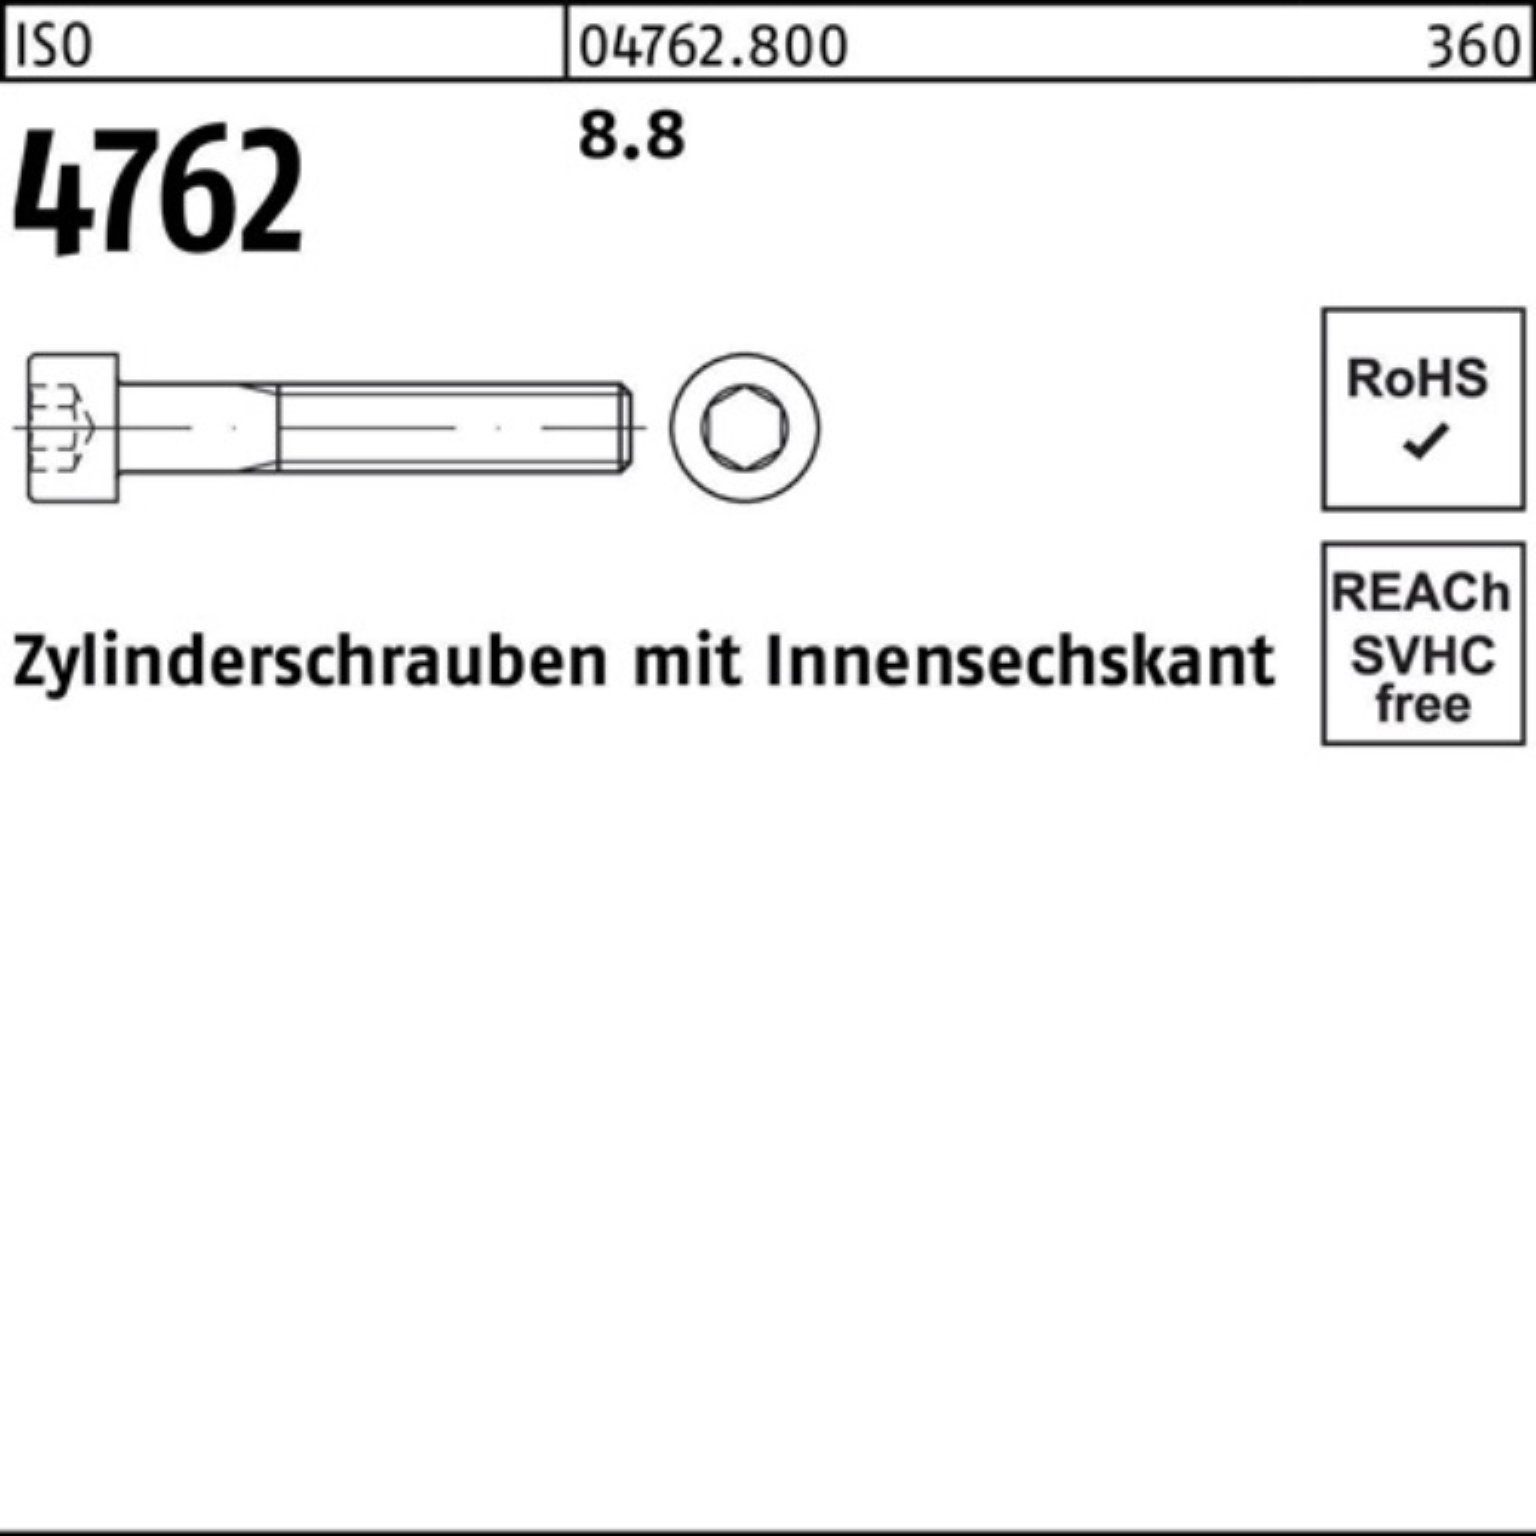 Zylinderschraube 1 Zylinderschraube M18x Pack 4762 Stück ISO I 8.8 Innen-6kt 100er Reyher 220